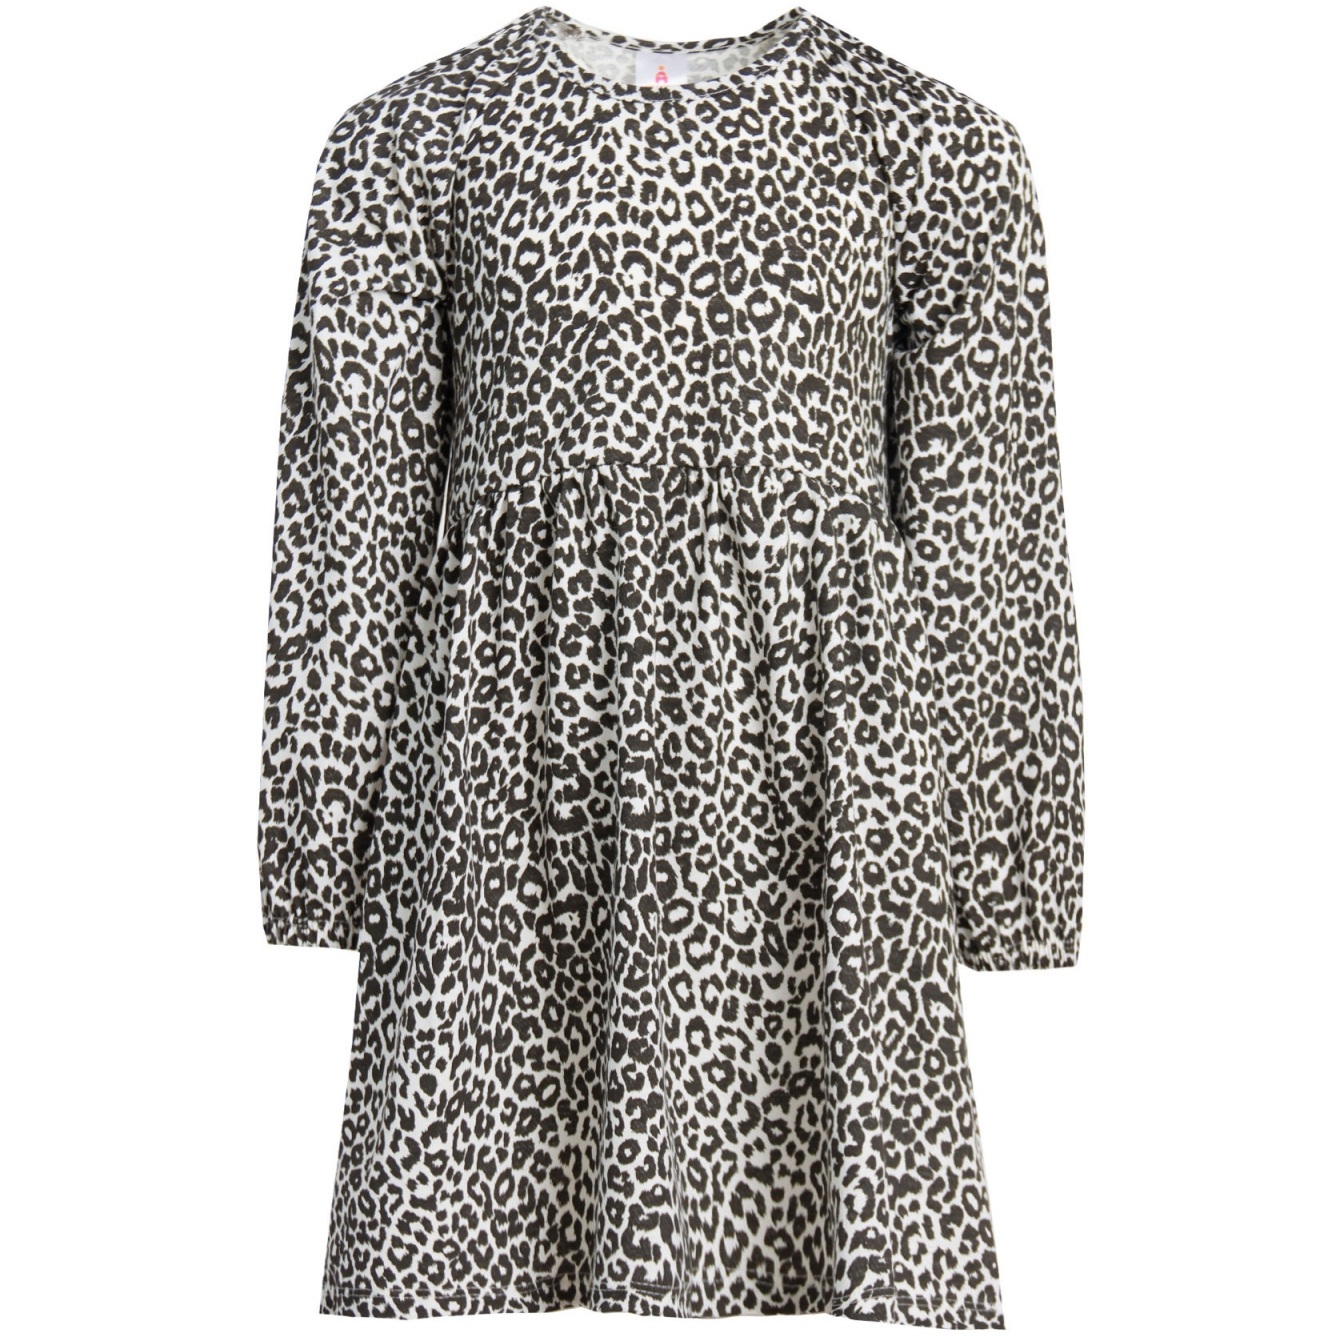 Платье д/р 116 "Нана-2" леопардовое черный Пл-601/2